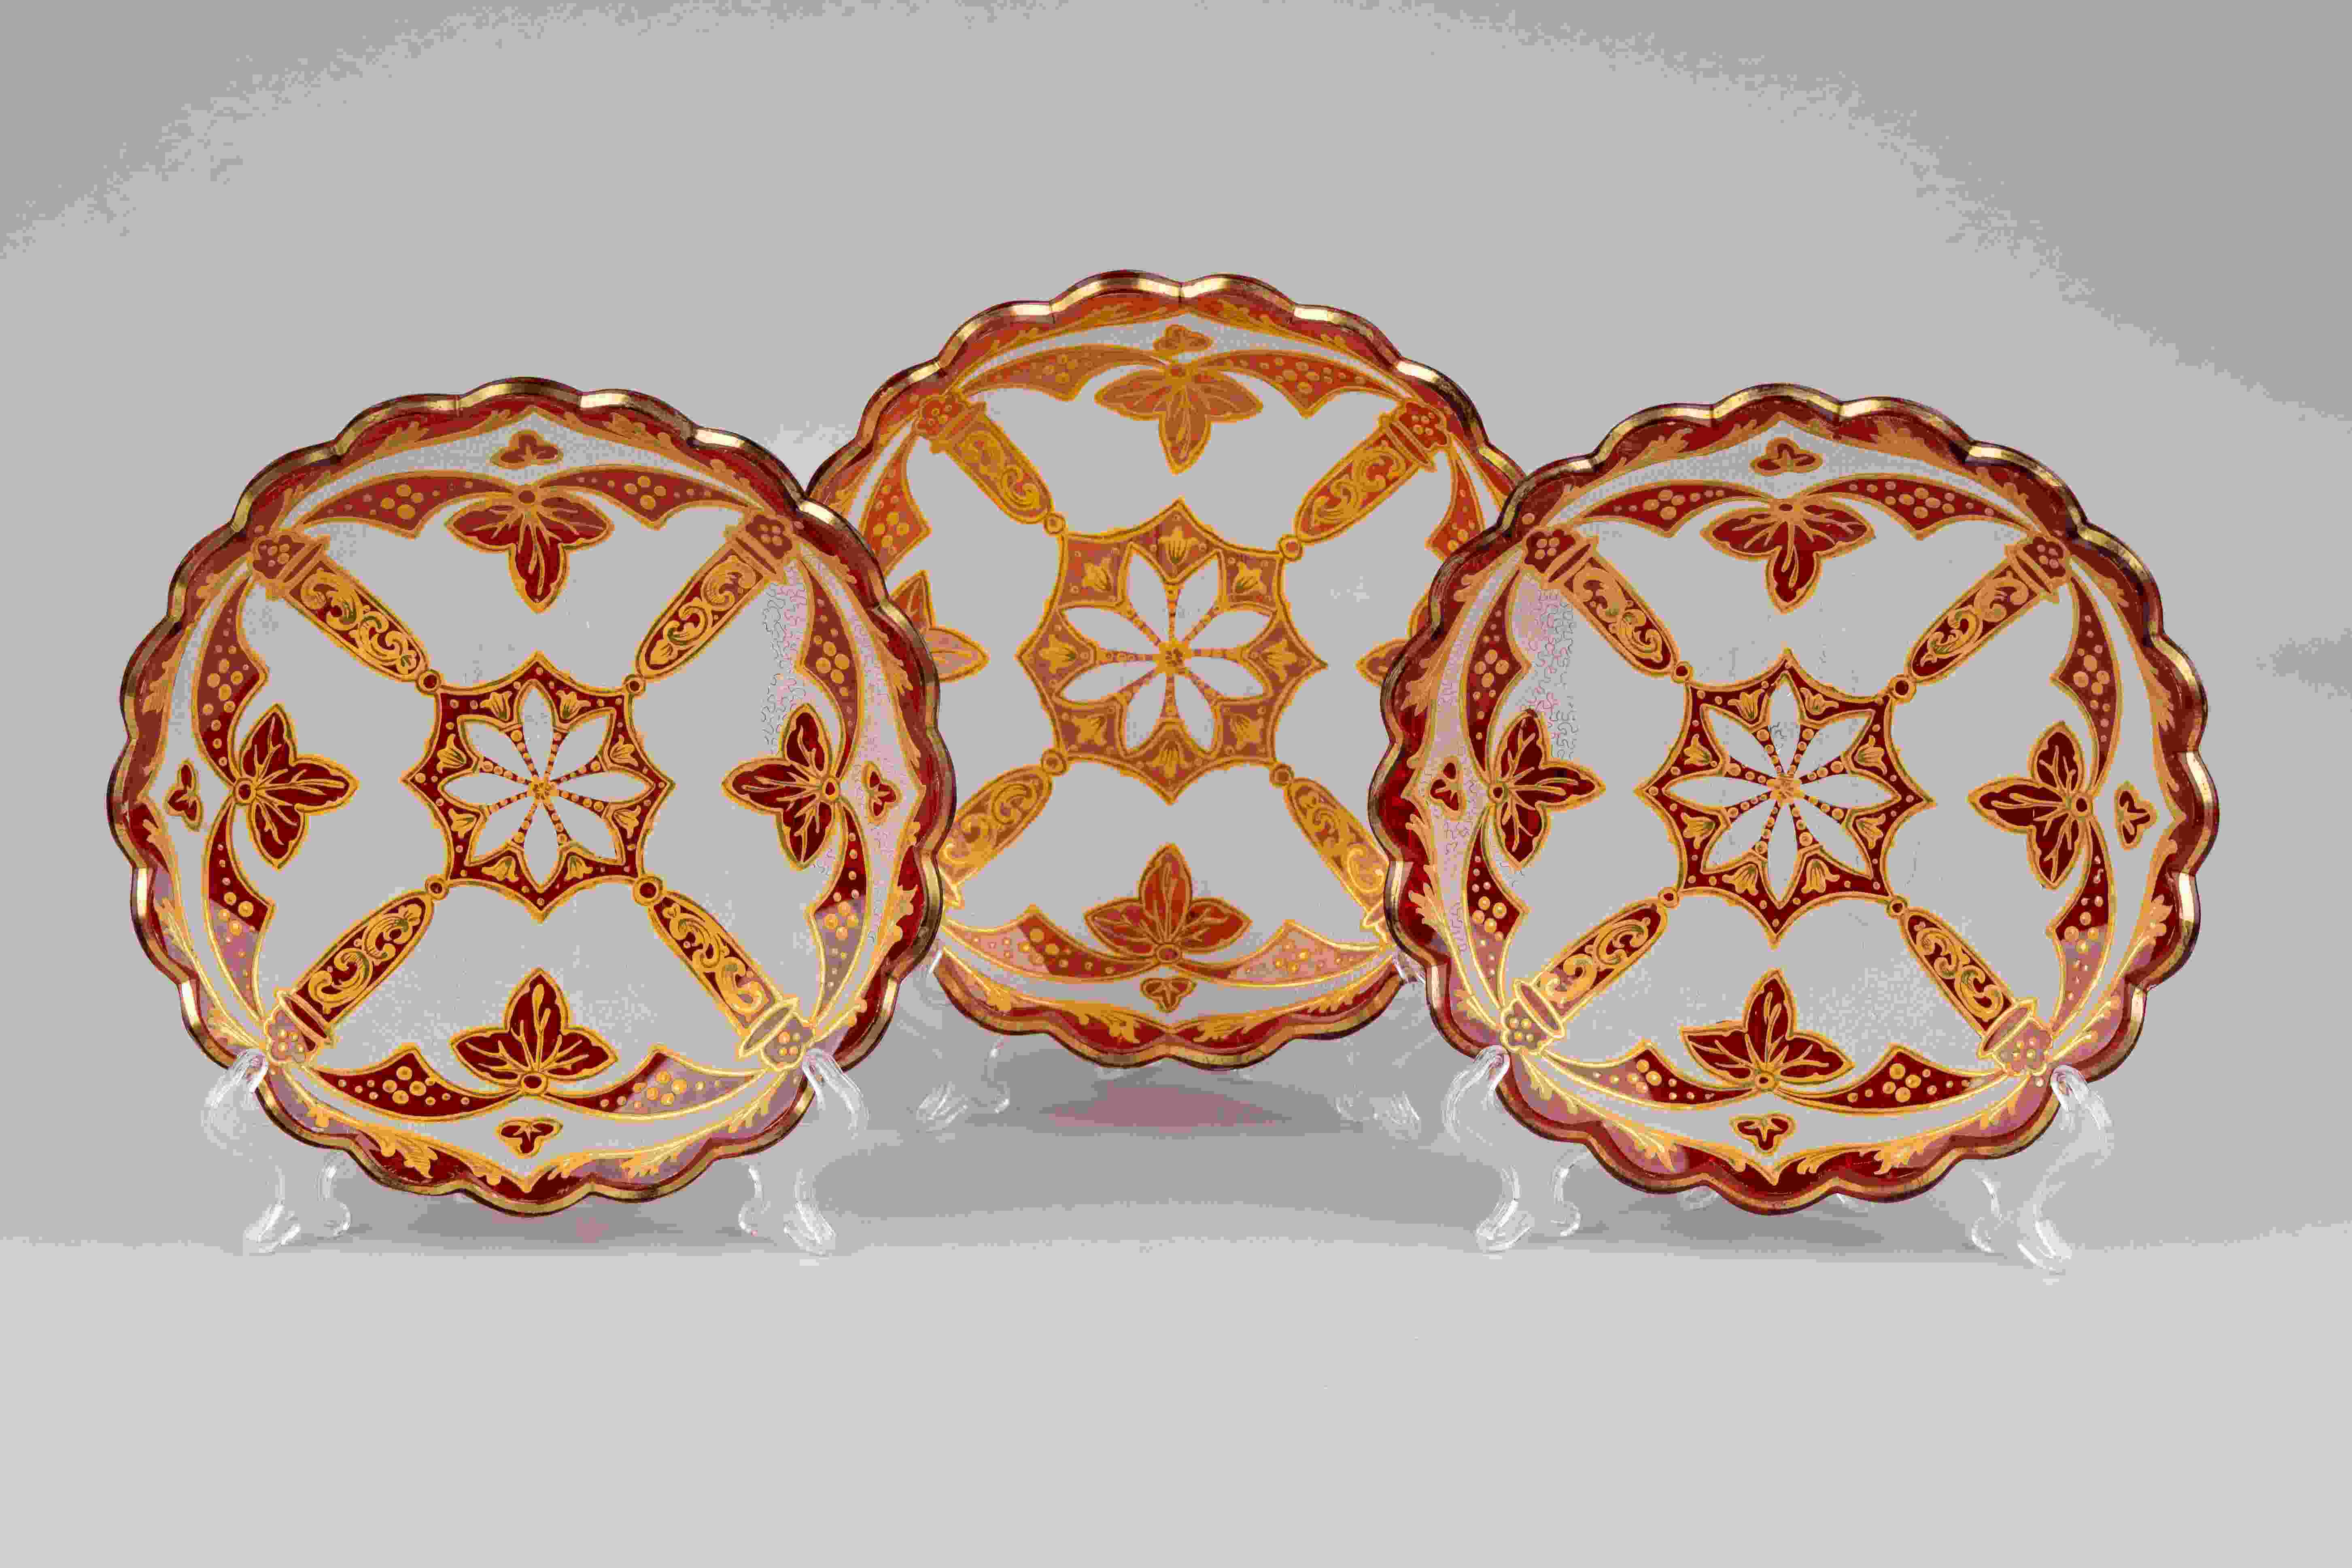 Три тарелки гранатового стекла с росписью золотом.<br>Россия, завод Бахметевых, 1830-1840-е годы.